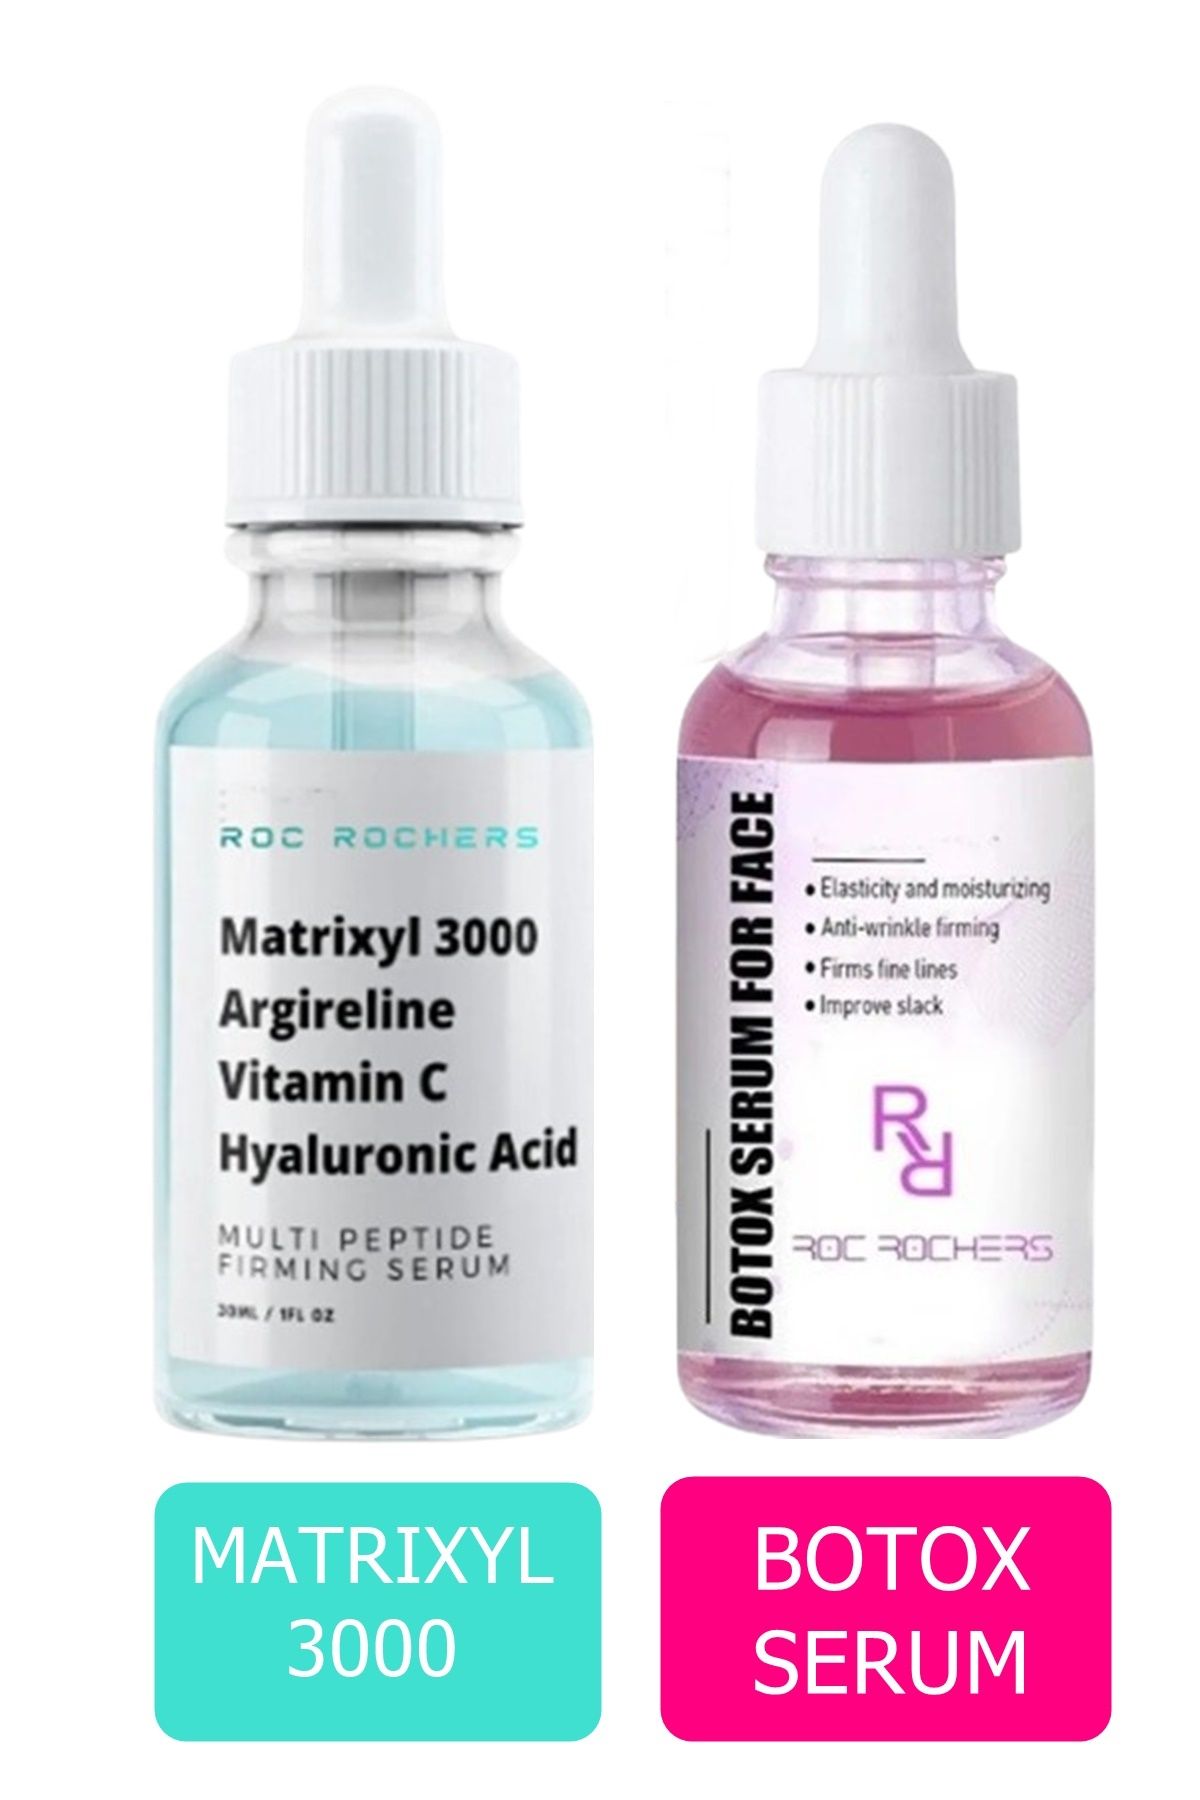 roc rochers Botox Dolgunlaştırıcı Serum & Matrixyl 3000, Argireline Vitamin C Hyaluronic Acid Peptide